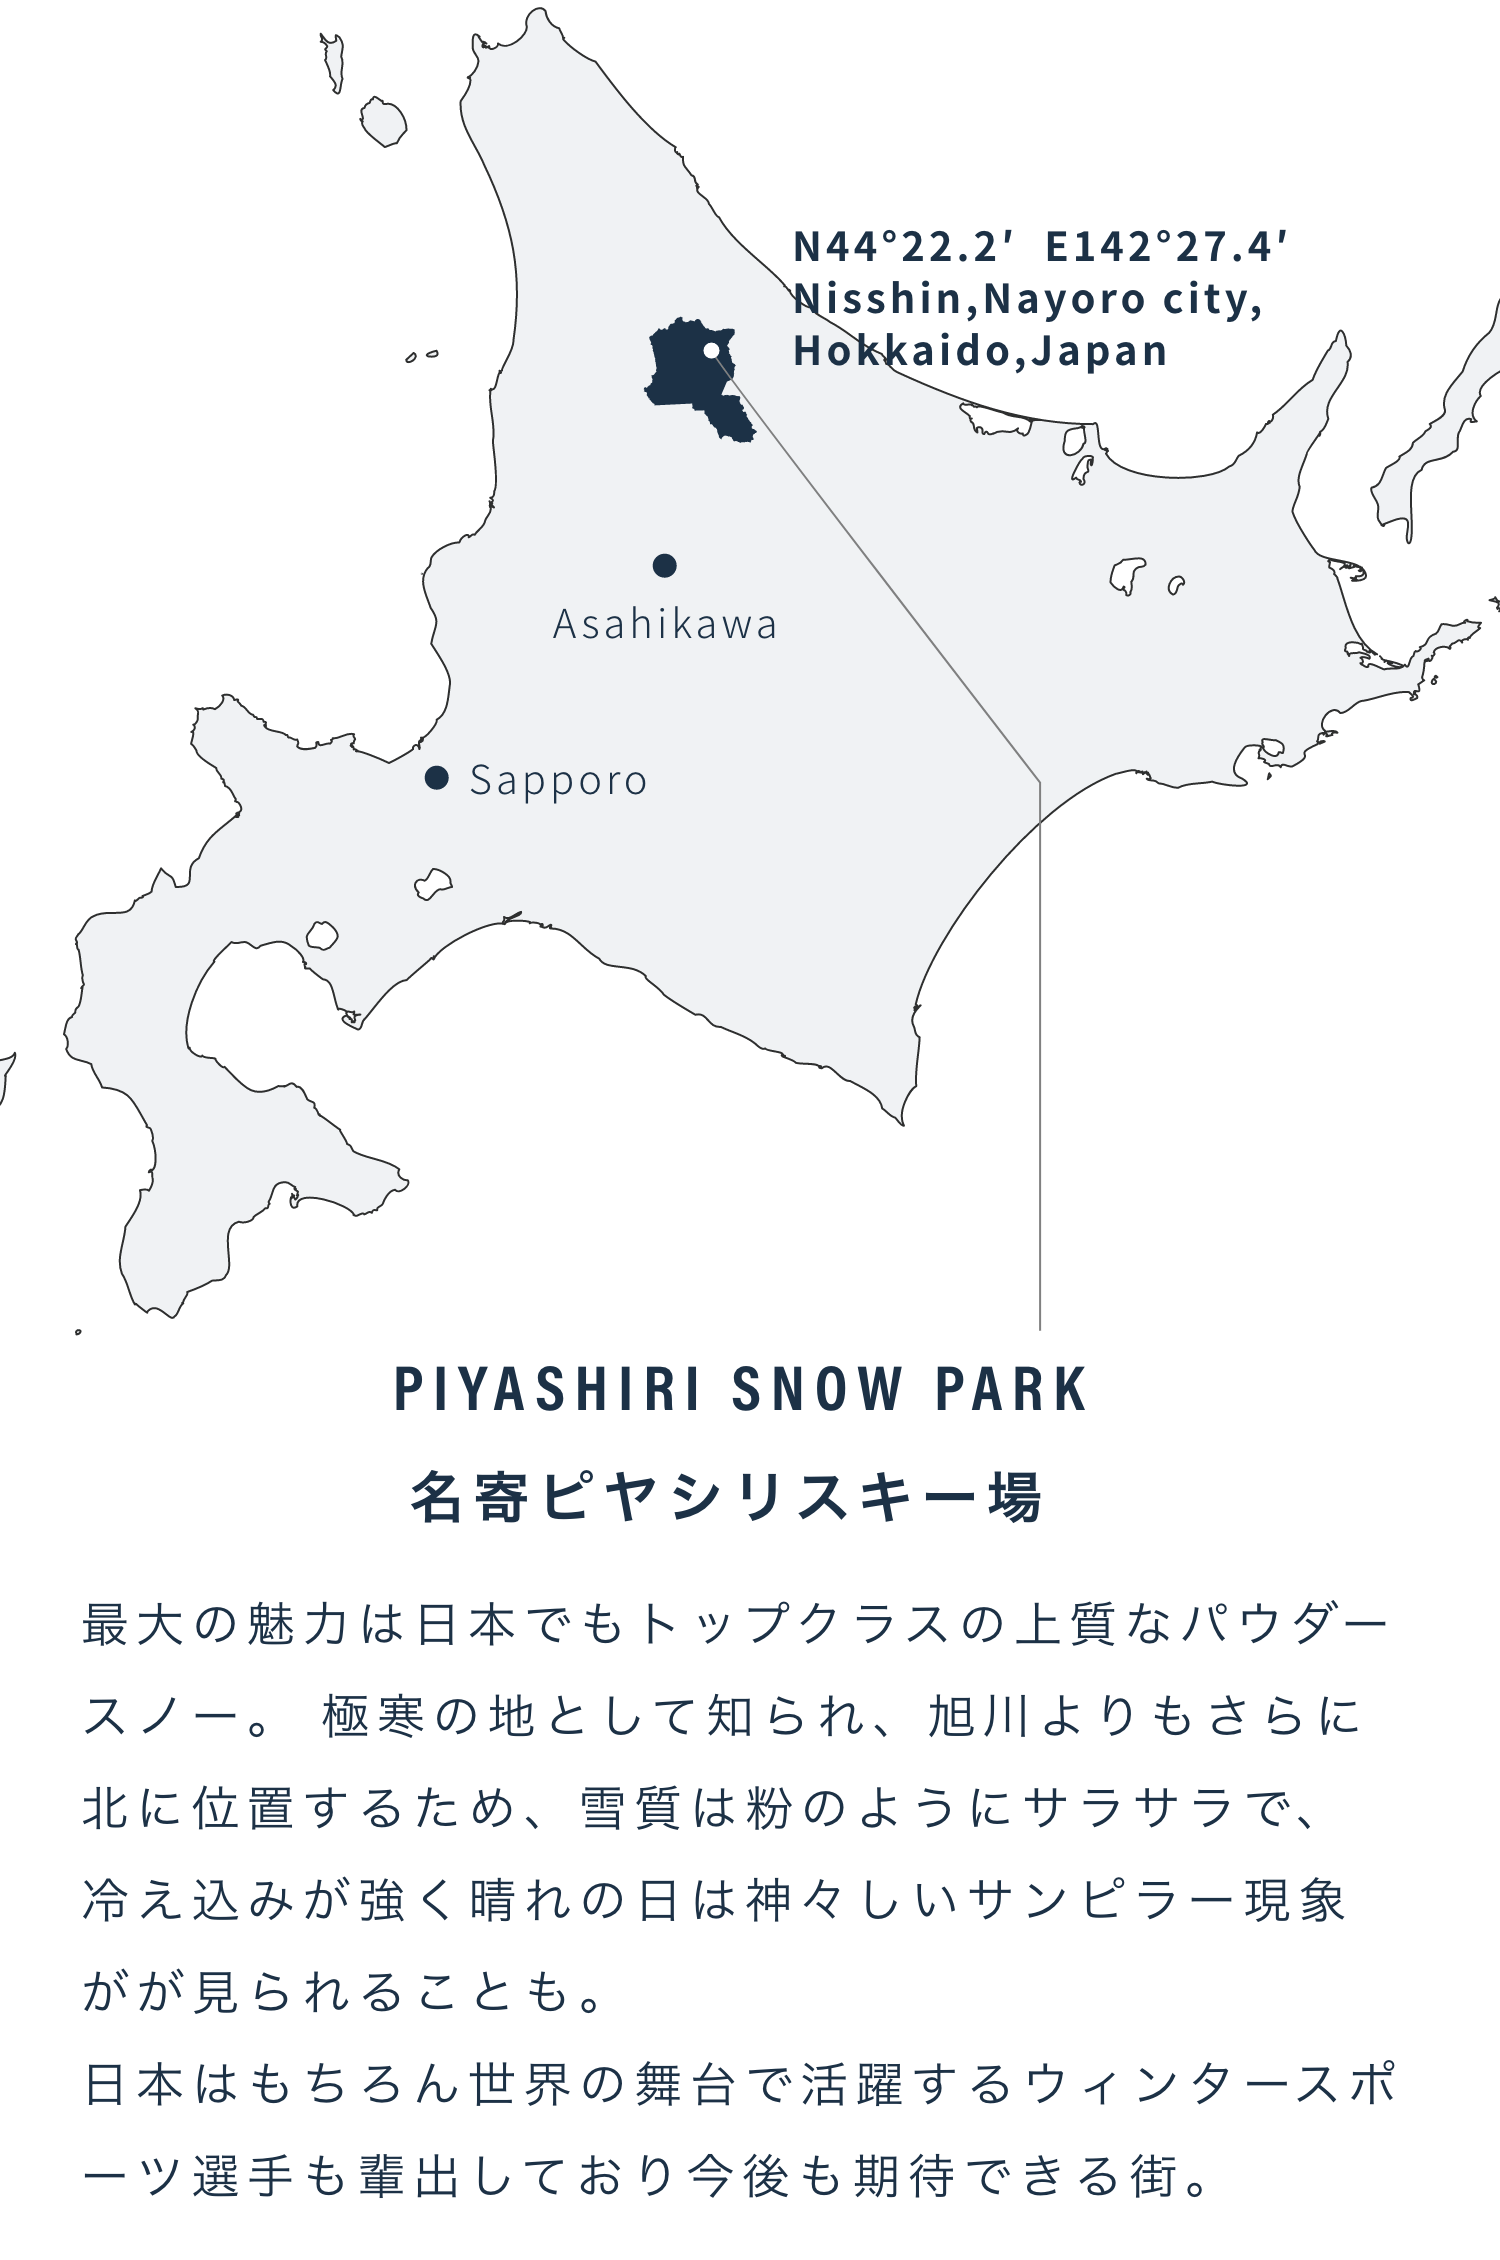 piyashiri snow park